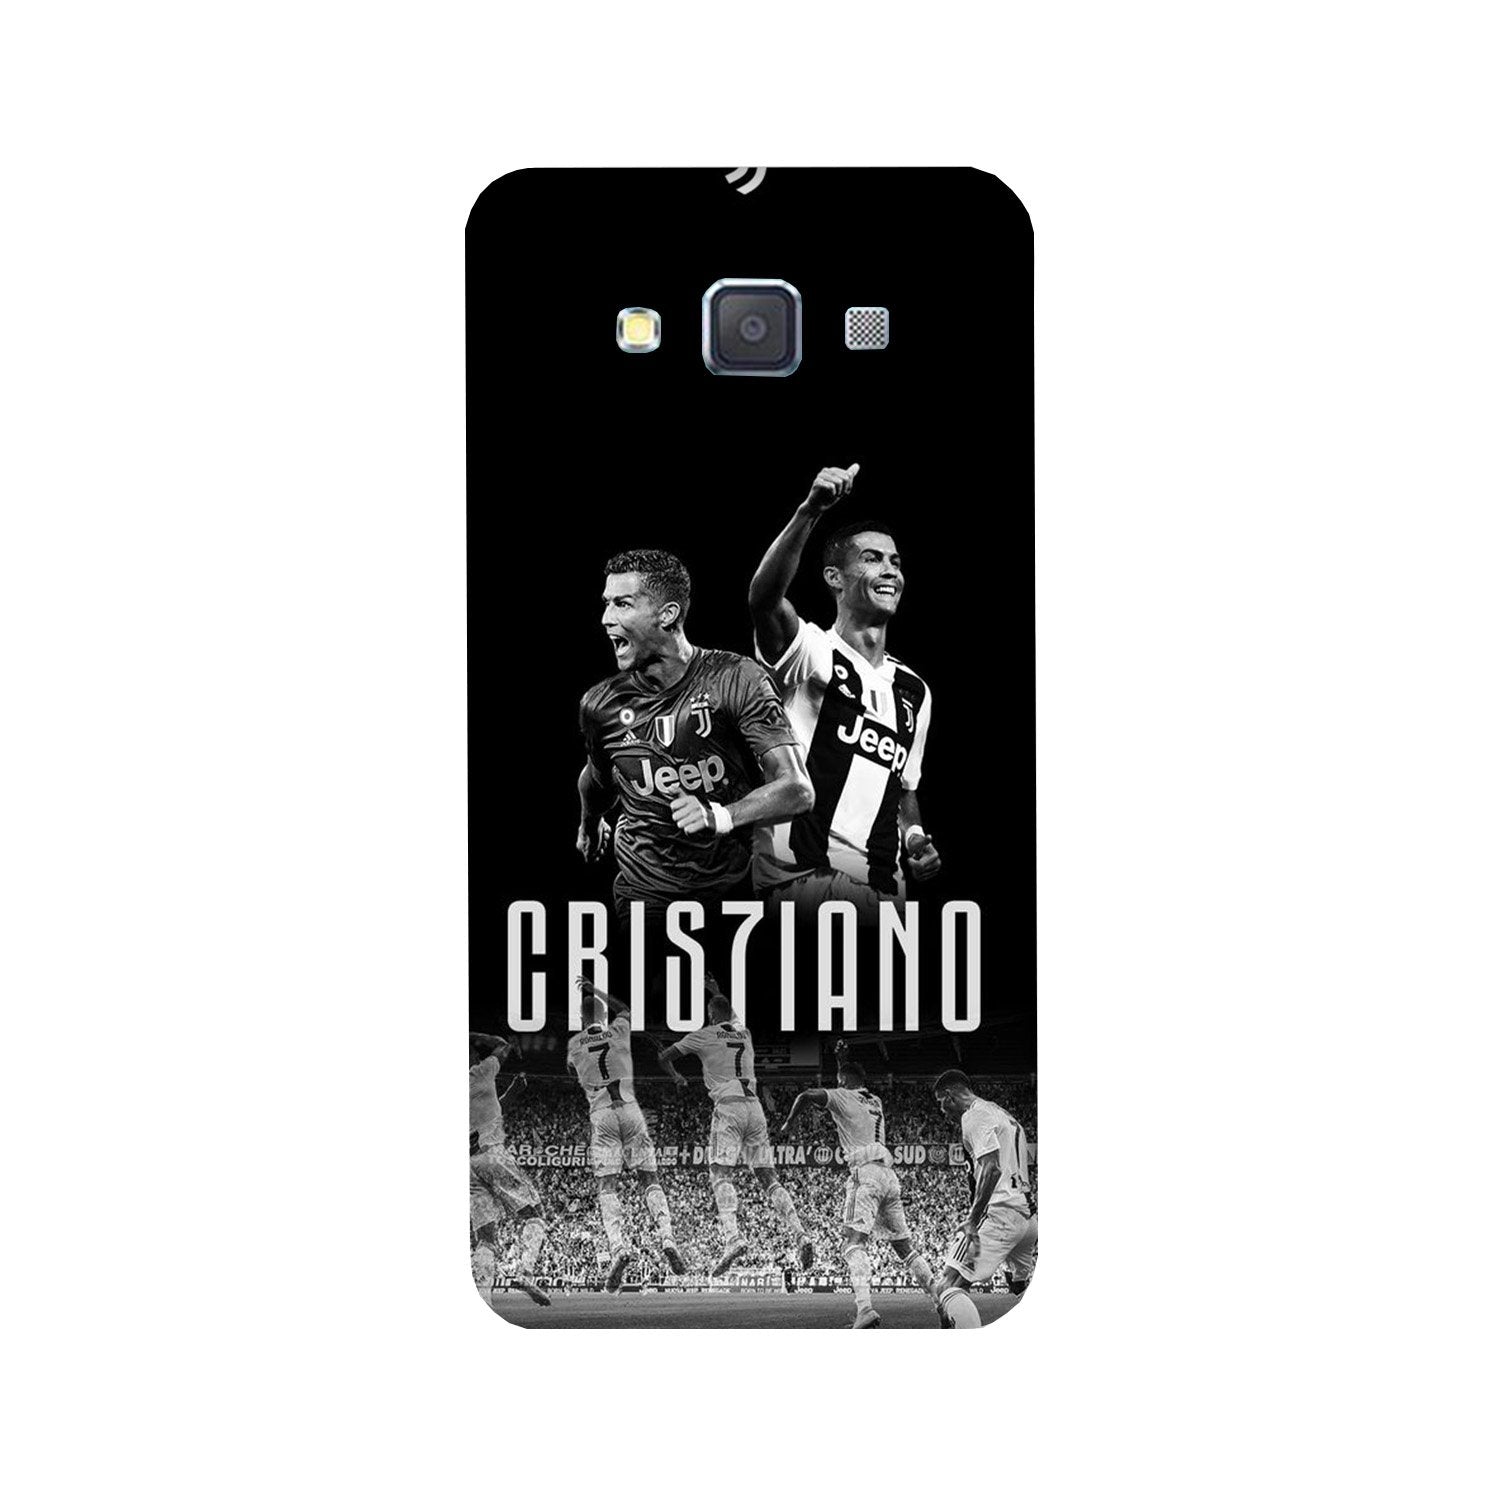 Cristiano Case for Galaxy E5(Design - 165)